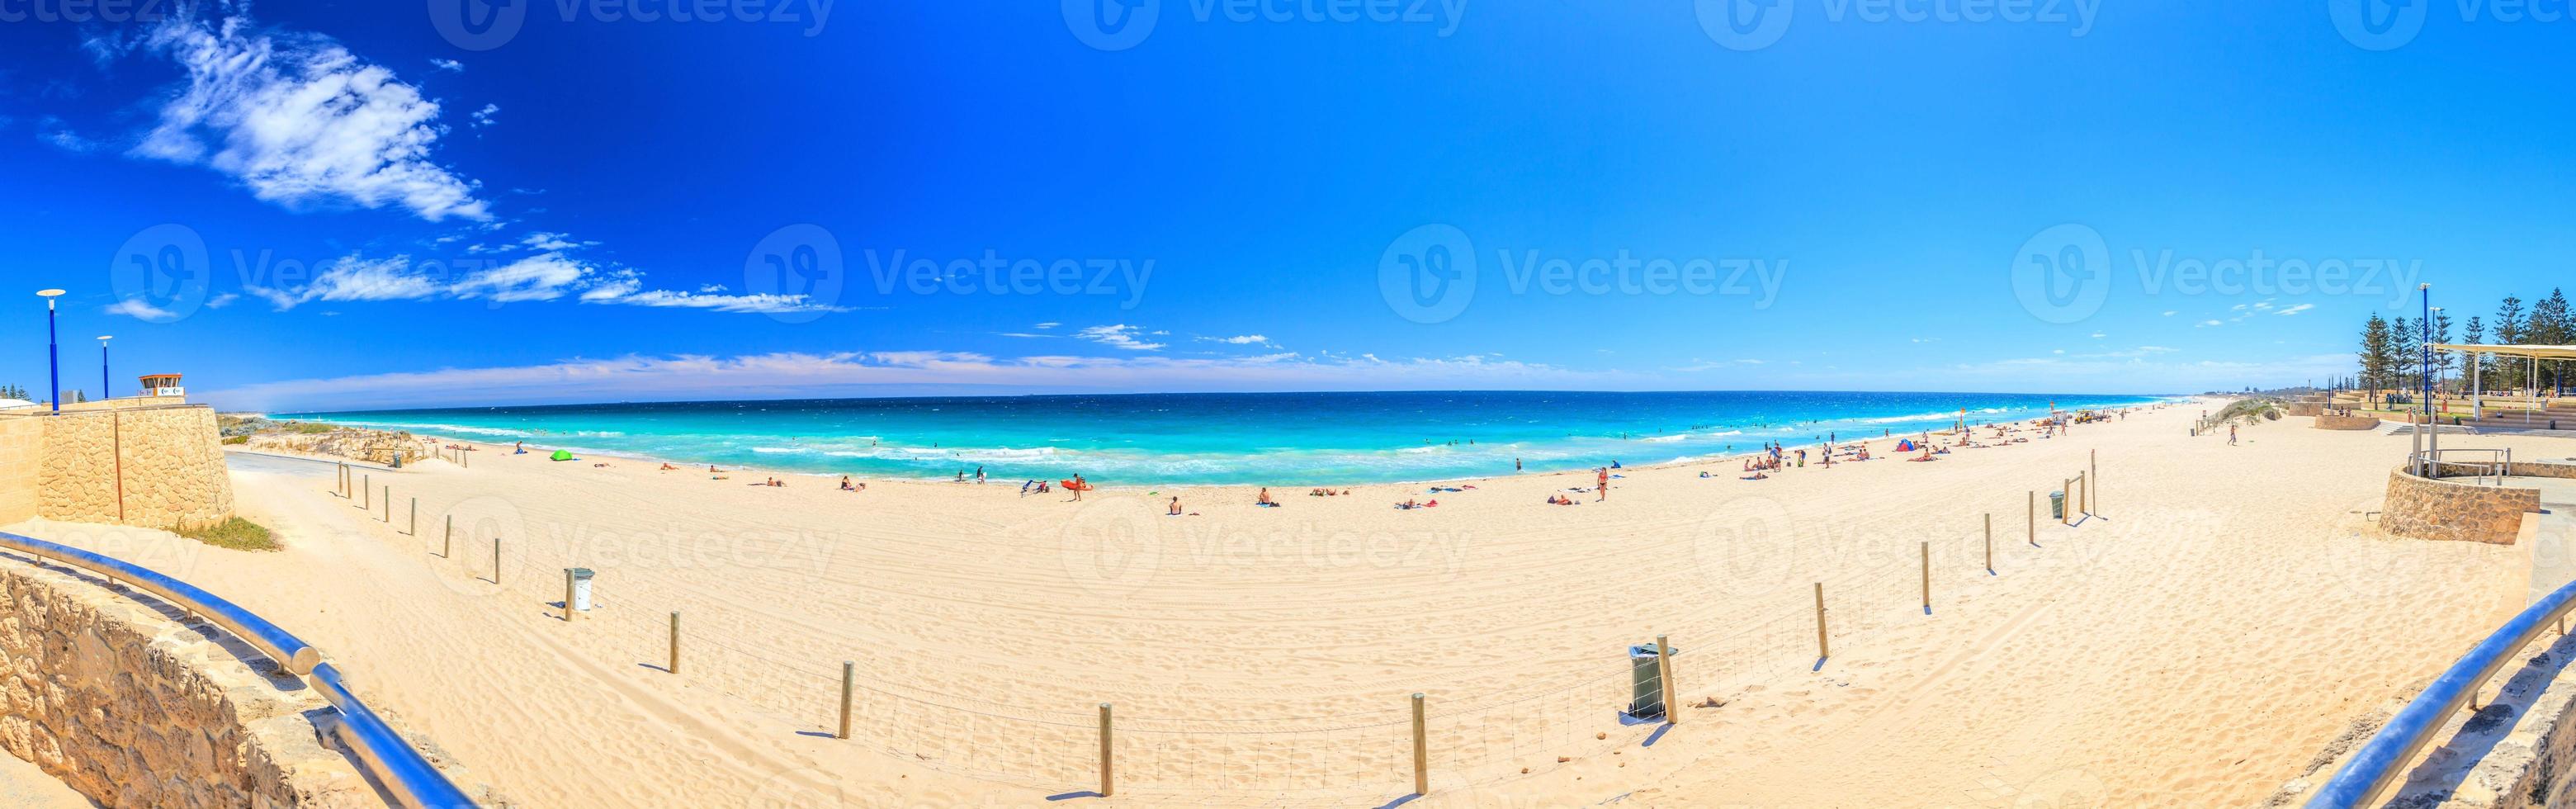 imagen panorámica de la playa de scarborough en perth durante el día en el verano de 2015 foto